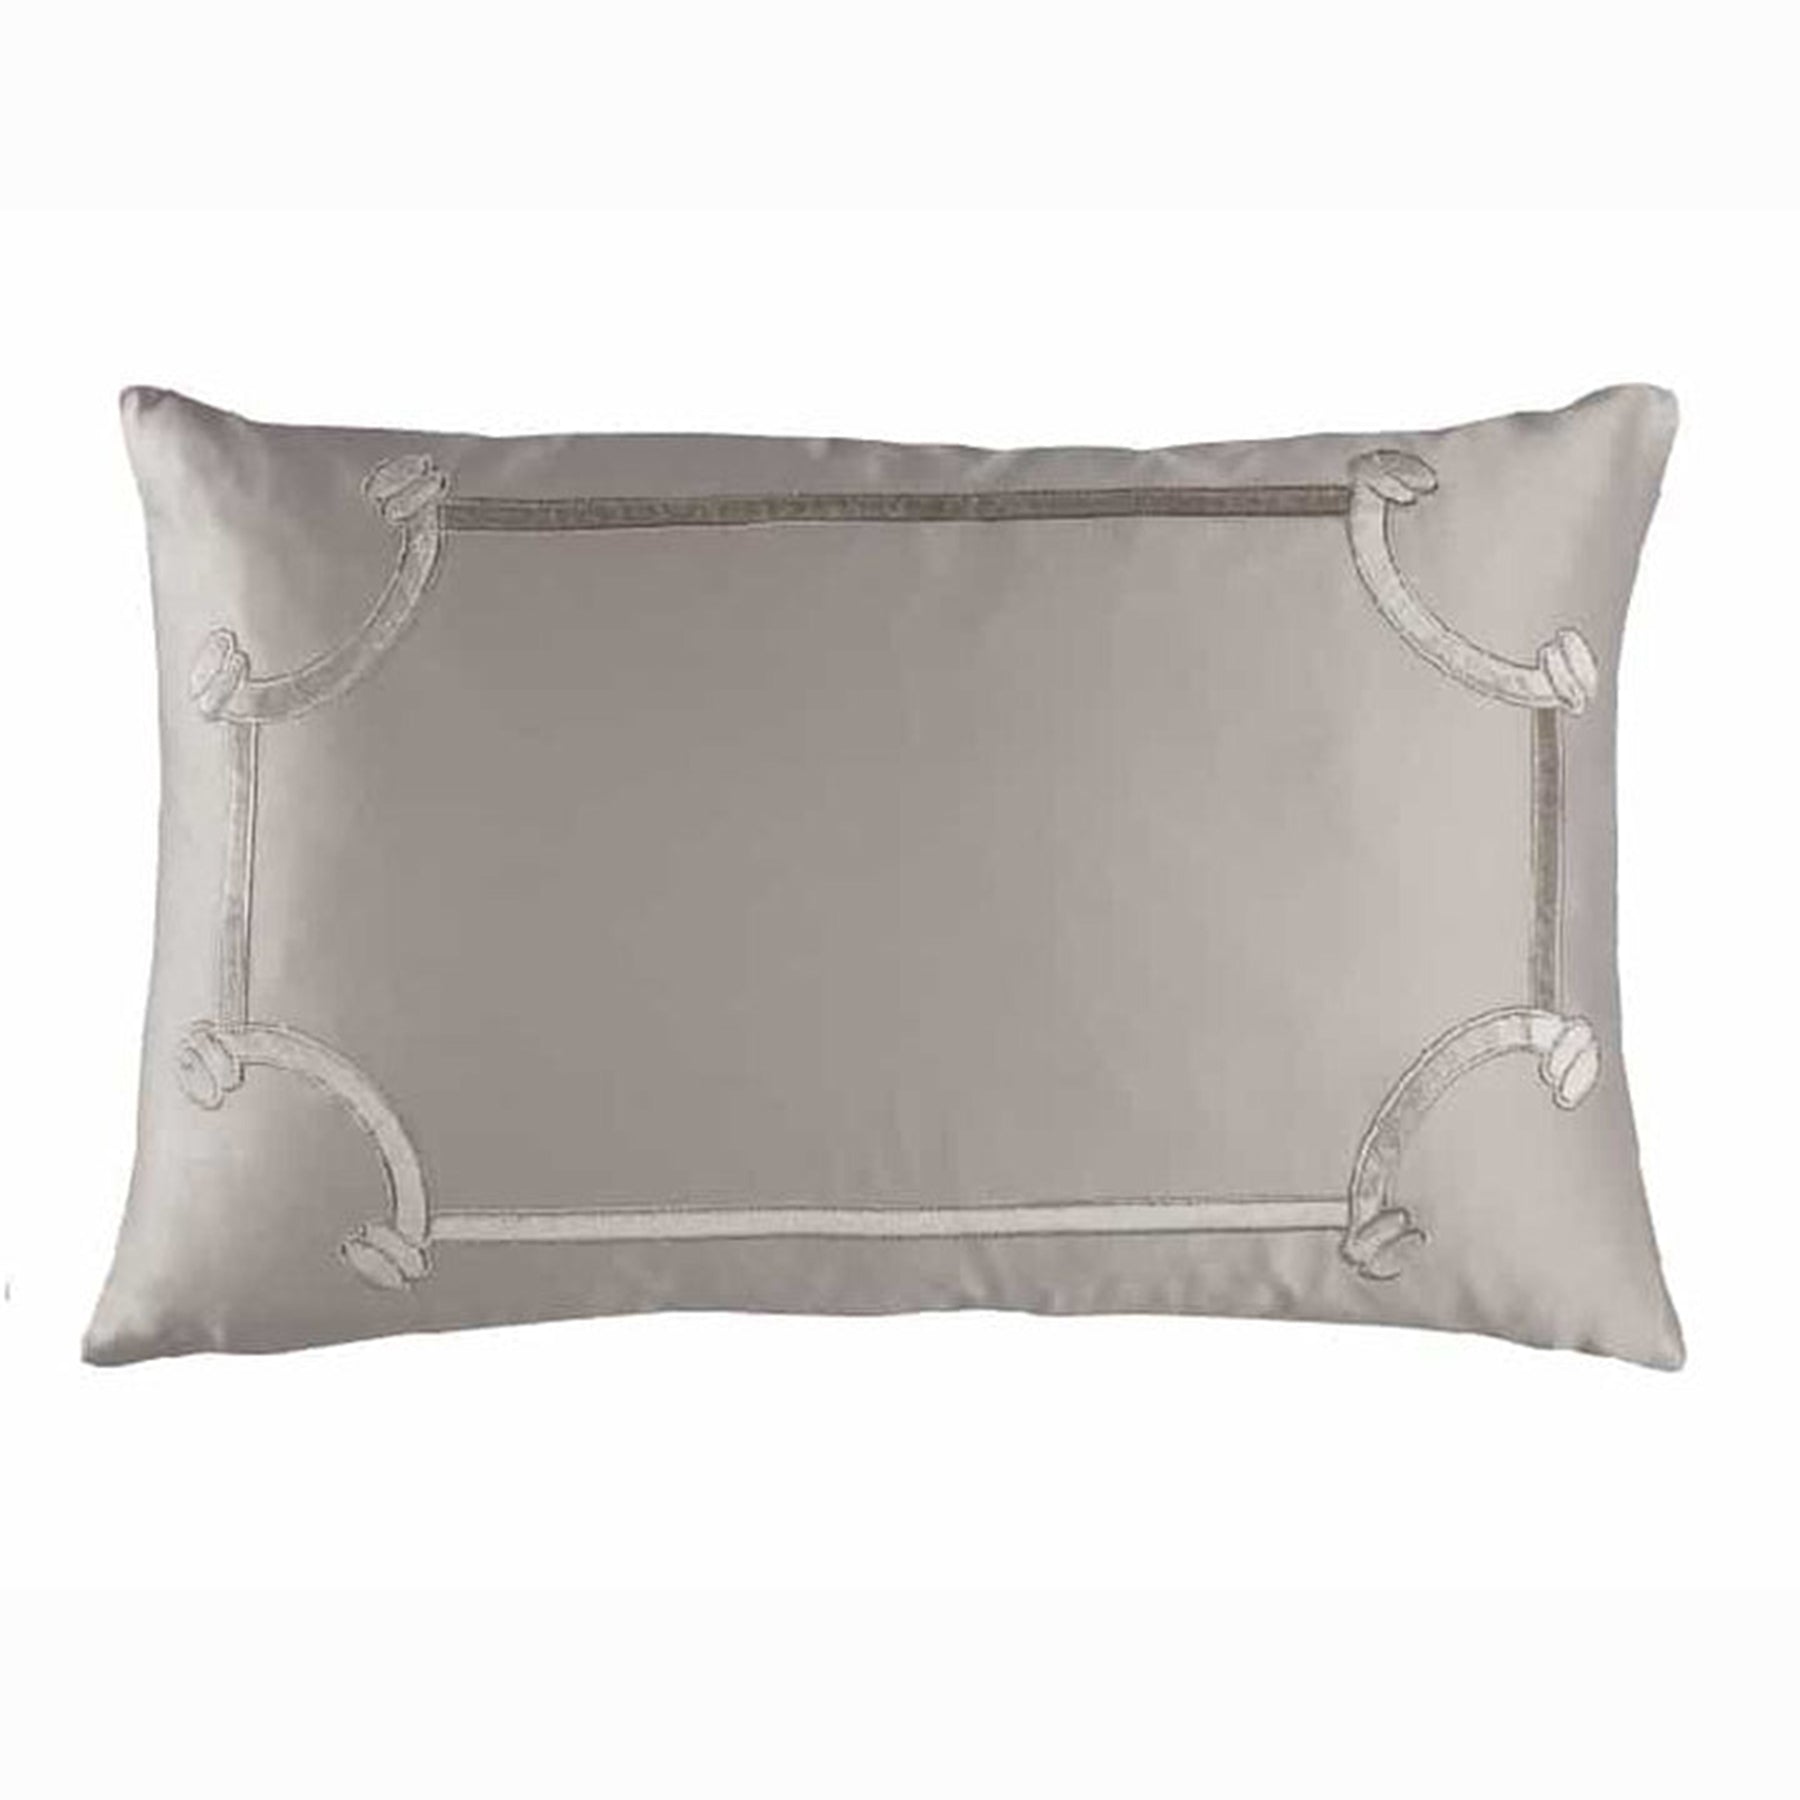 Lili Alessandra Vendome Decorative Pillow